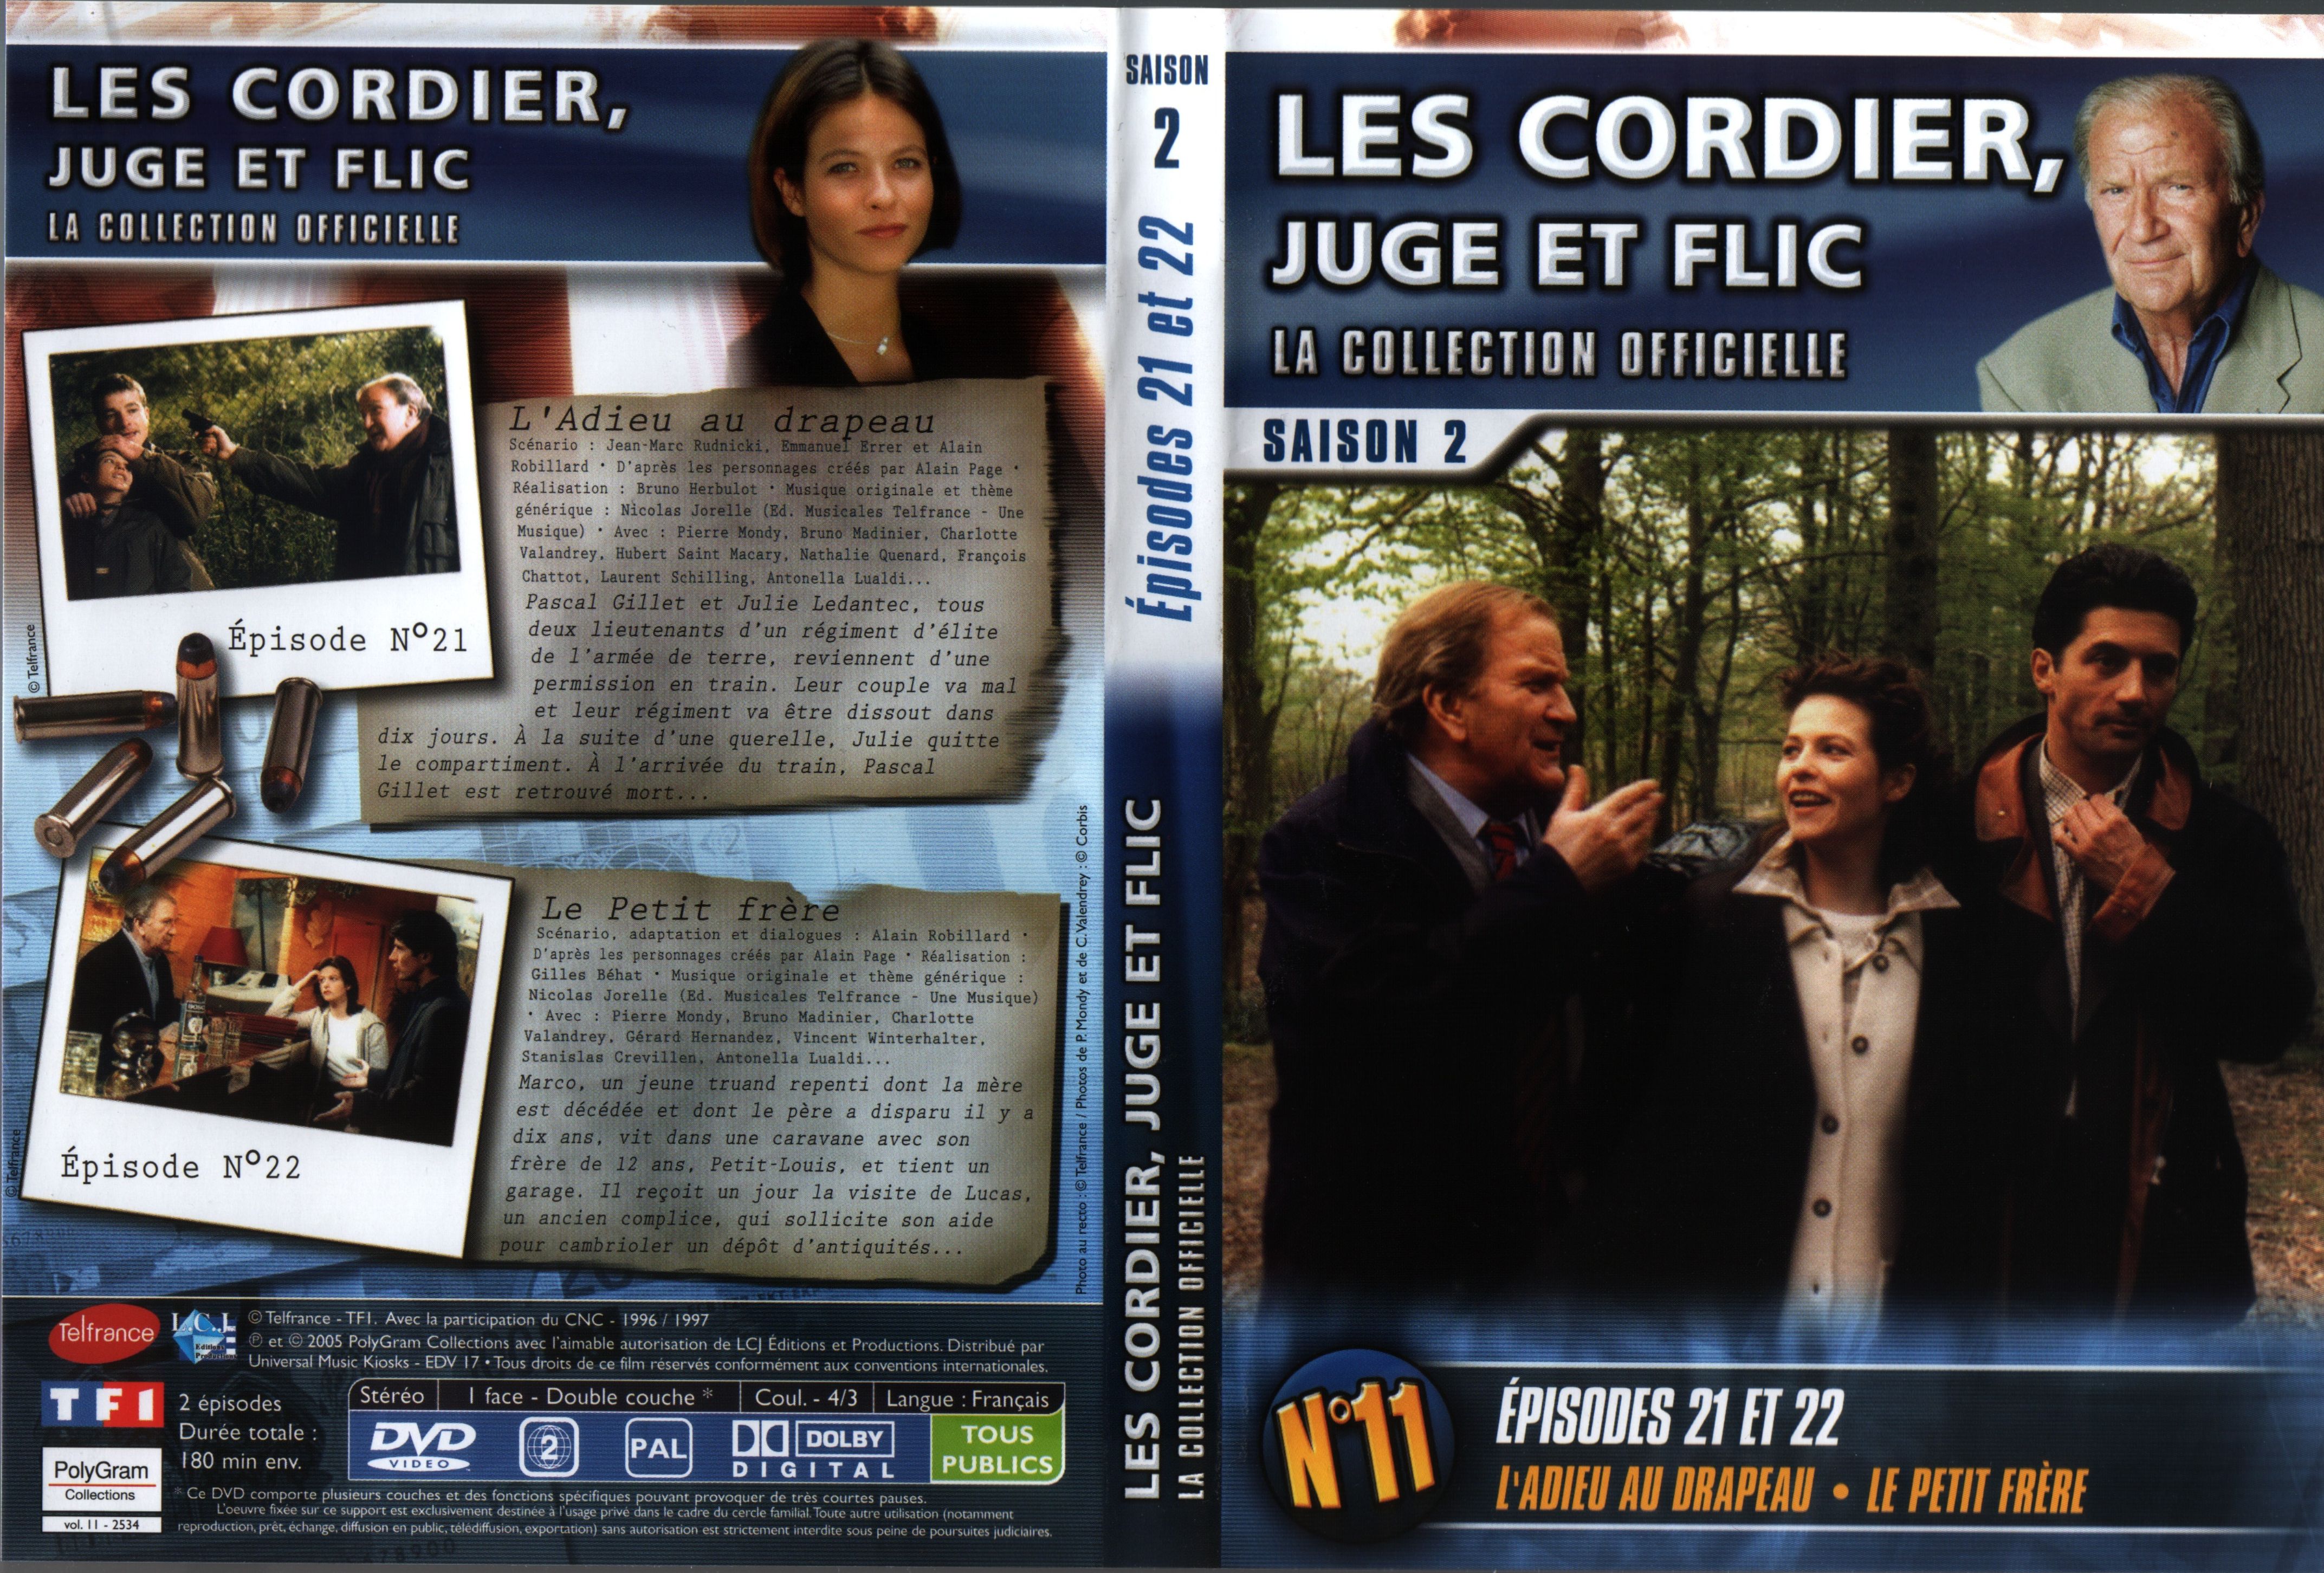 Jaquette DVD Les cordier juge et flic Saison 2 vol 11